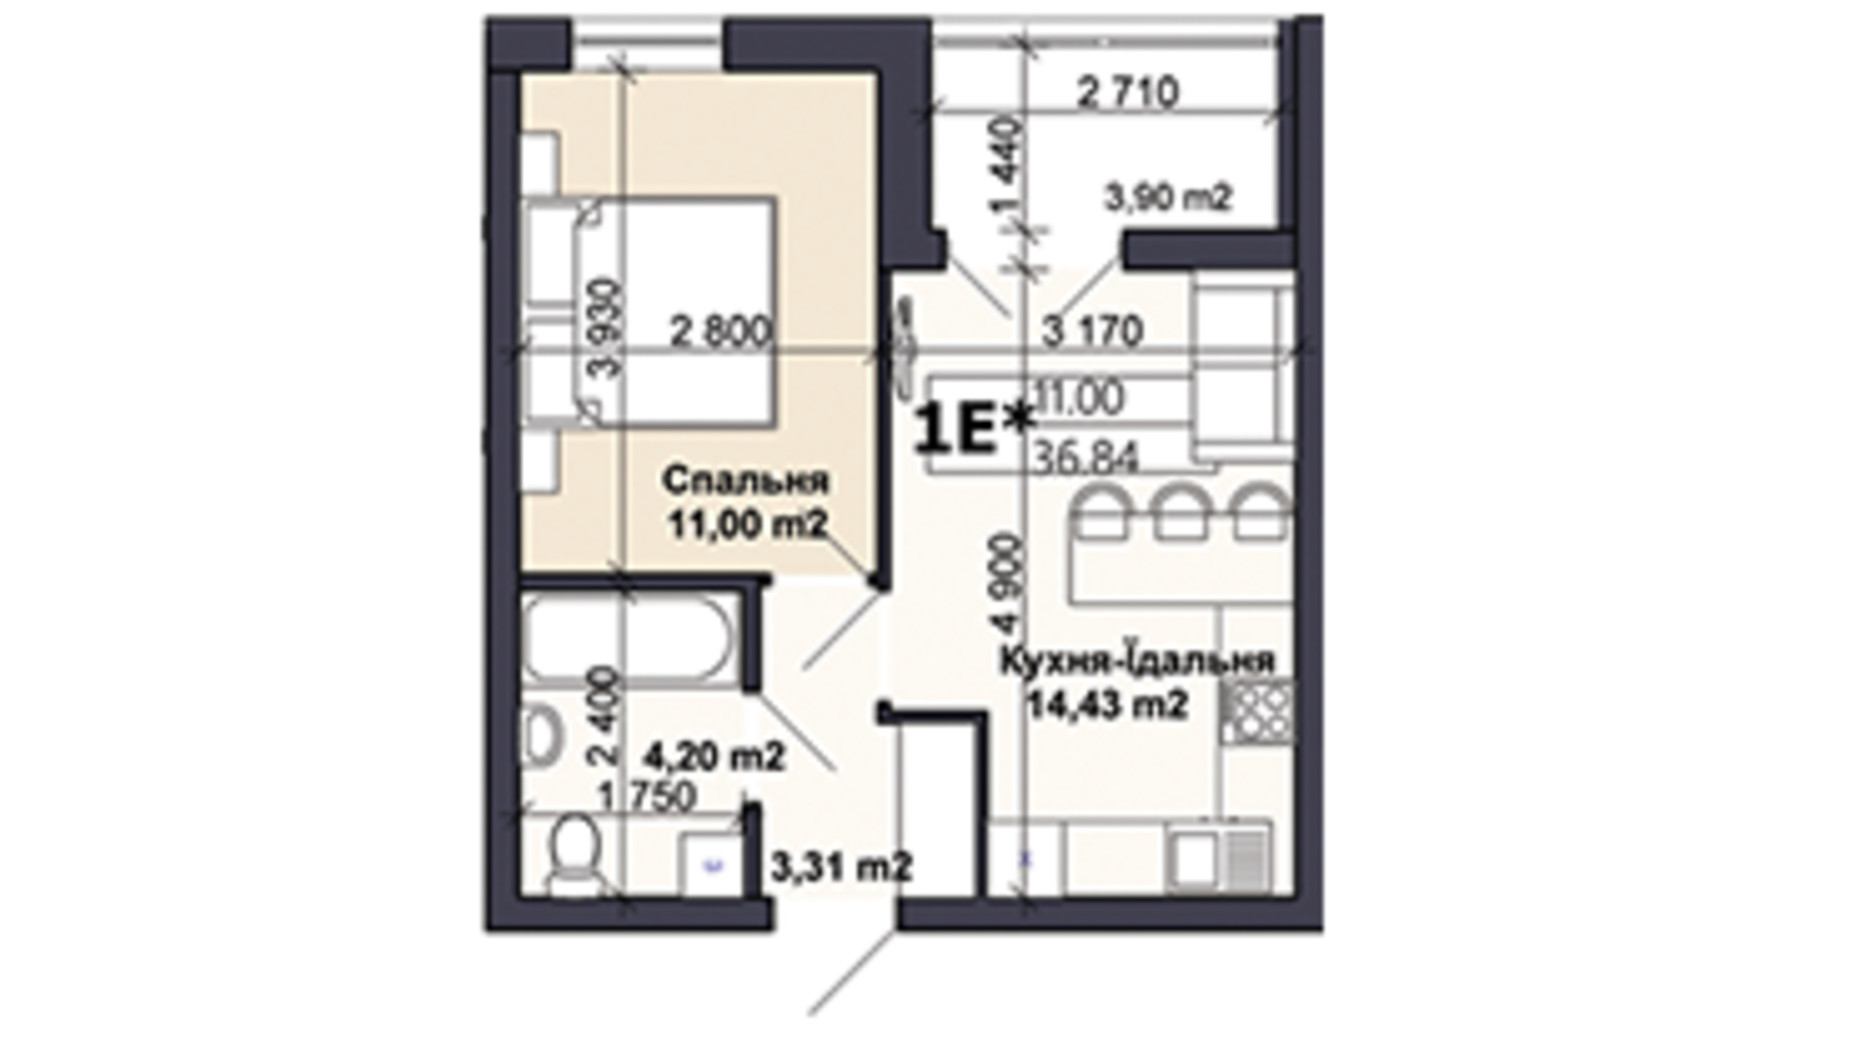 Планировка 1-комнатной квартиры в ЖК Саме той 36.84 м², фото 585410